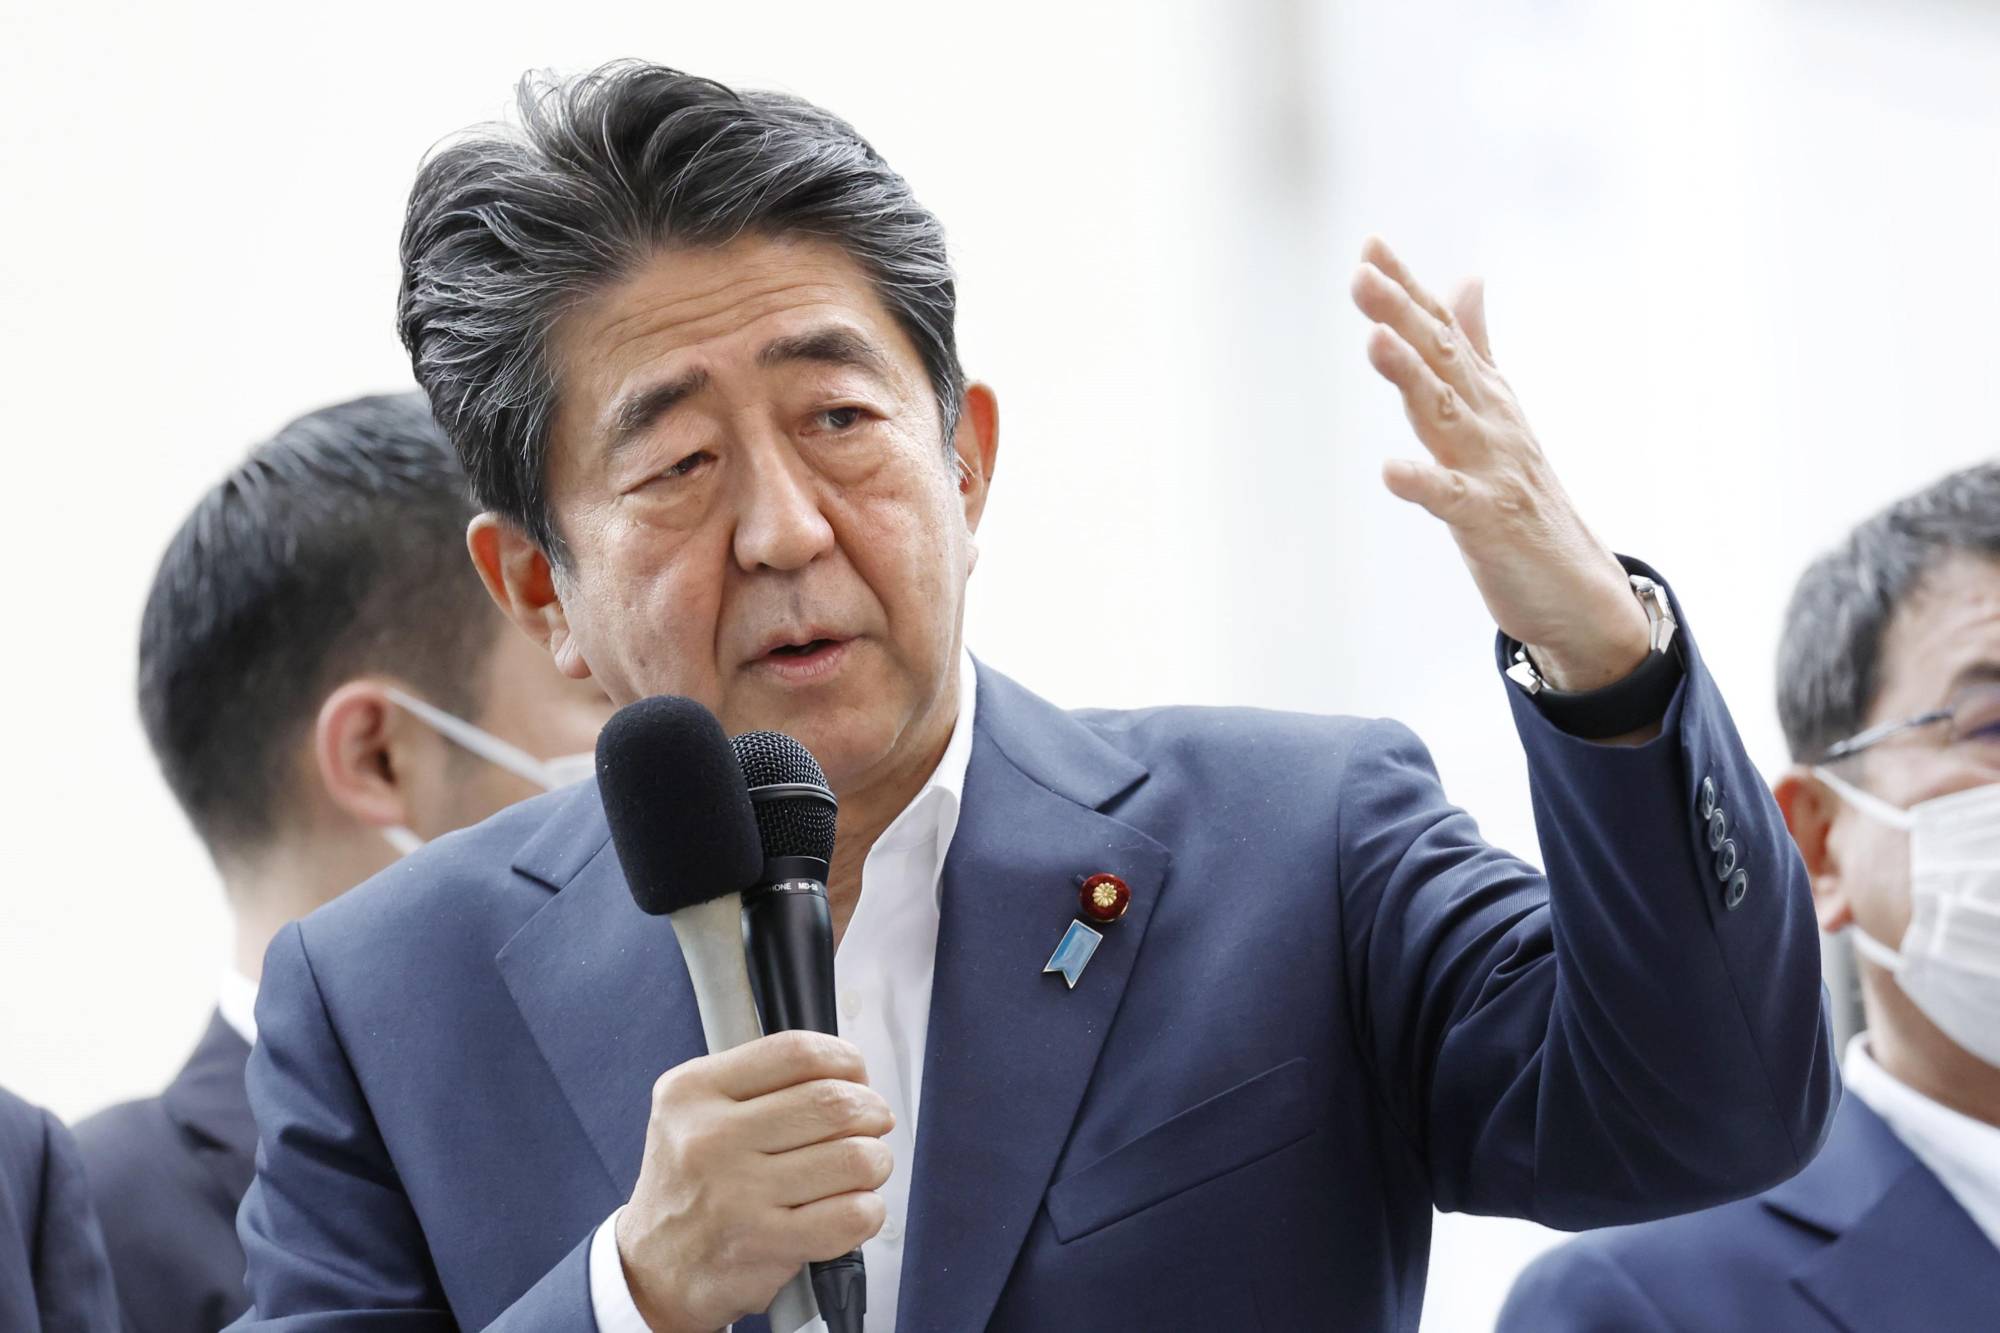 Ճապոնիայում մահափորձ են իրականացրել երկրի նախկին վարչապետ Շինզո Աբէի դեմ (տեսանյութ, լուսանկարներ 16+)